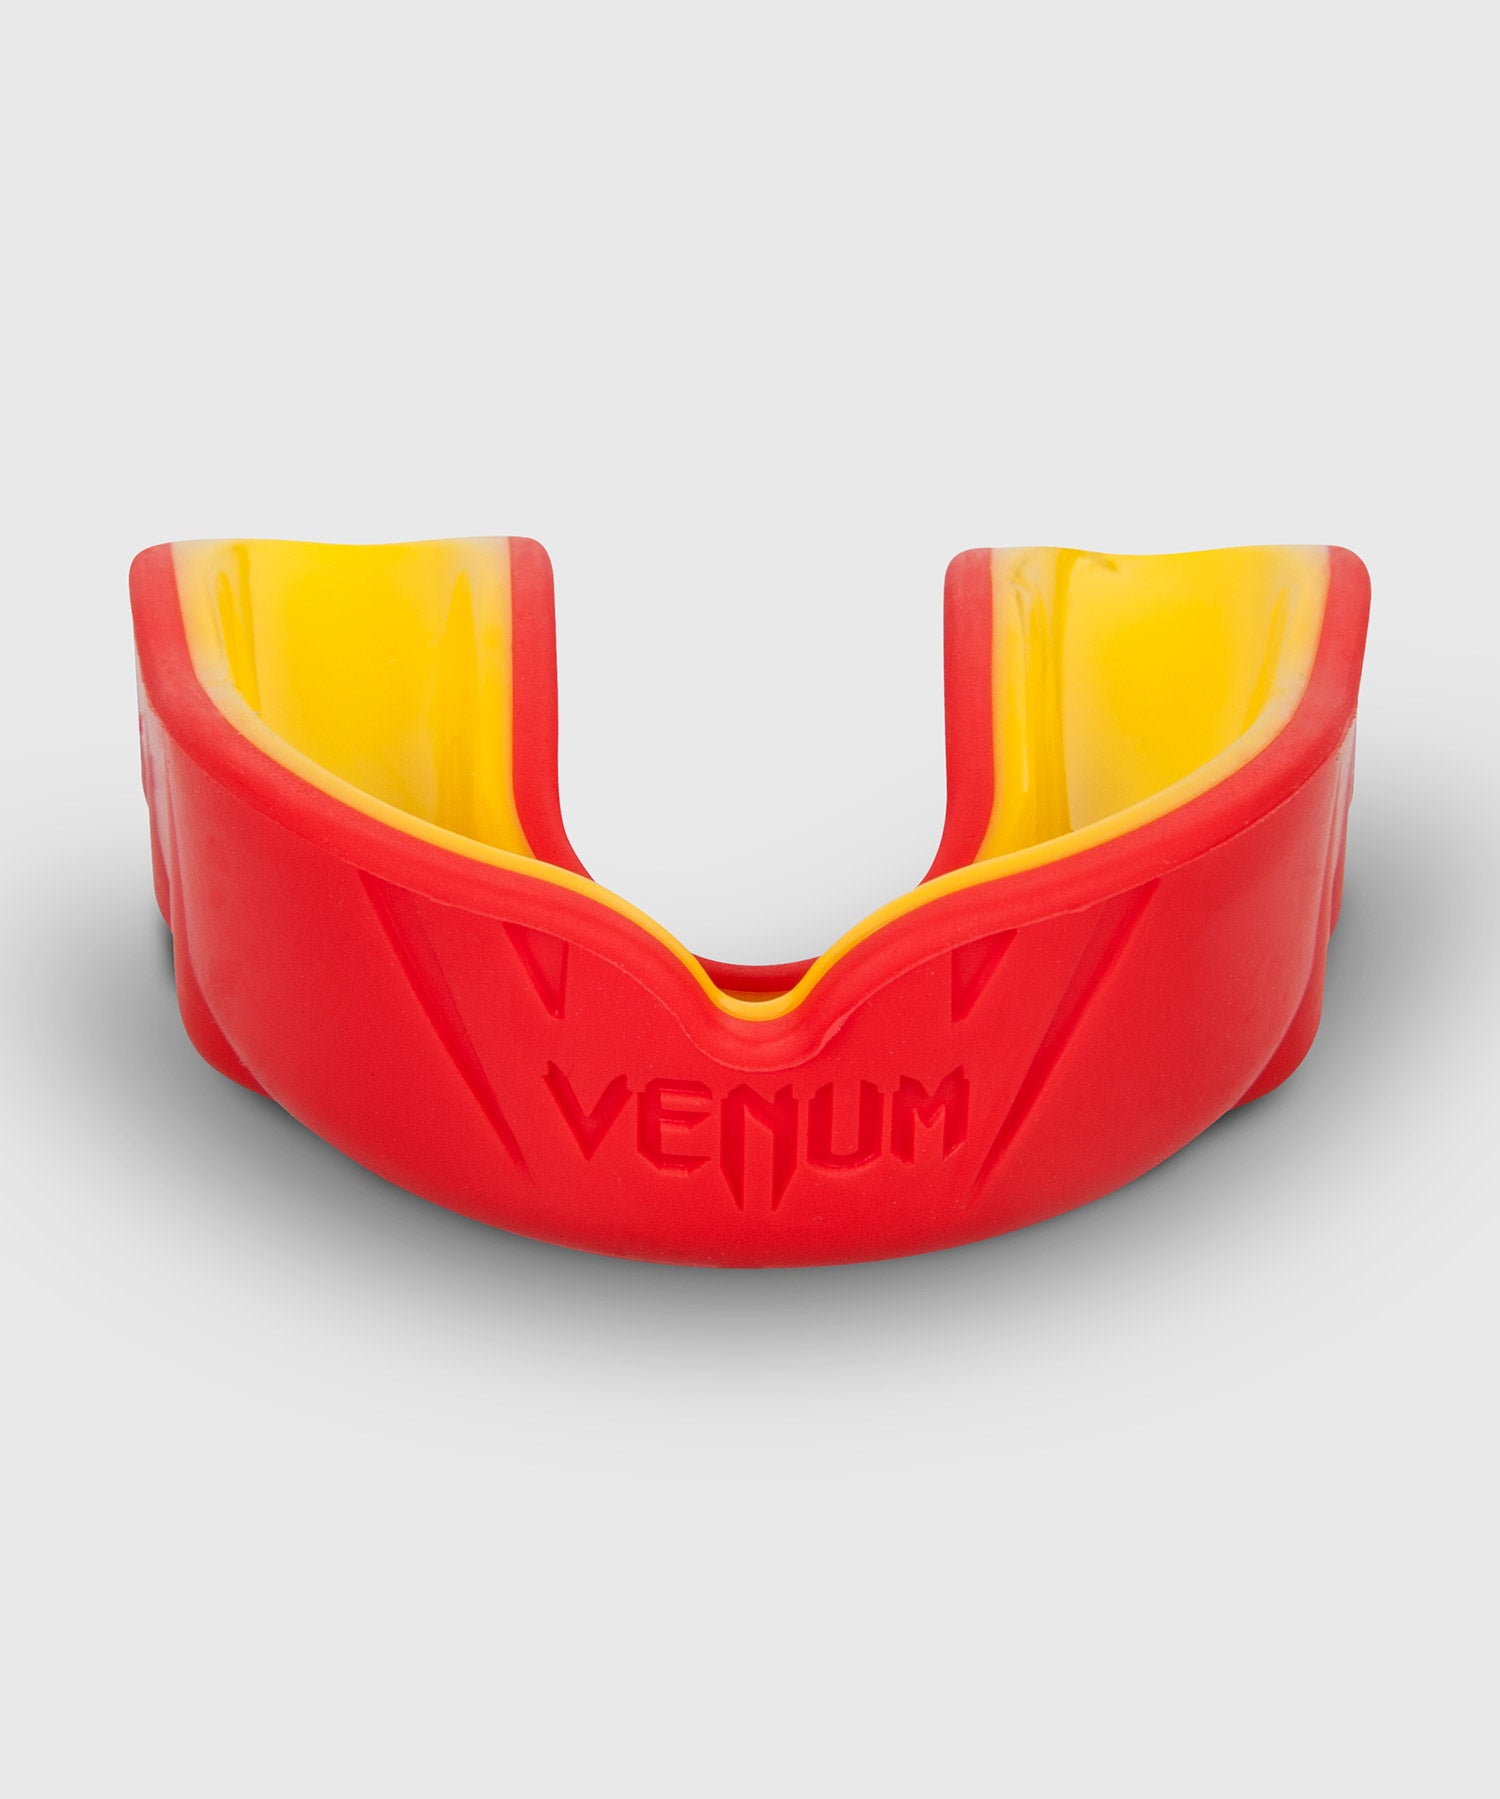 Protège-dents Venum Challenger